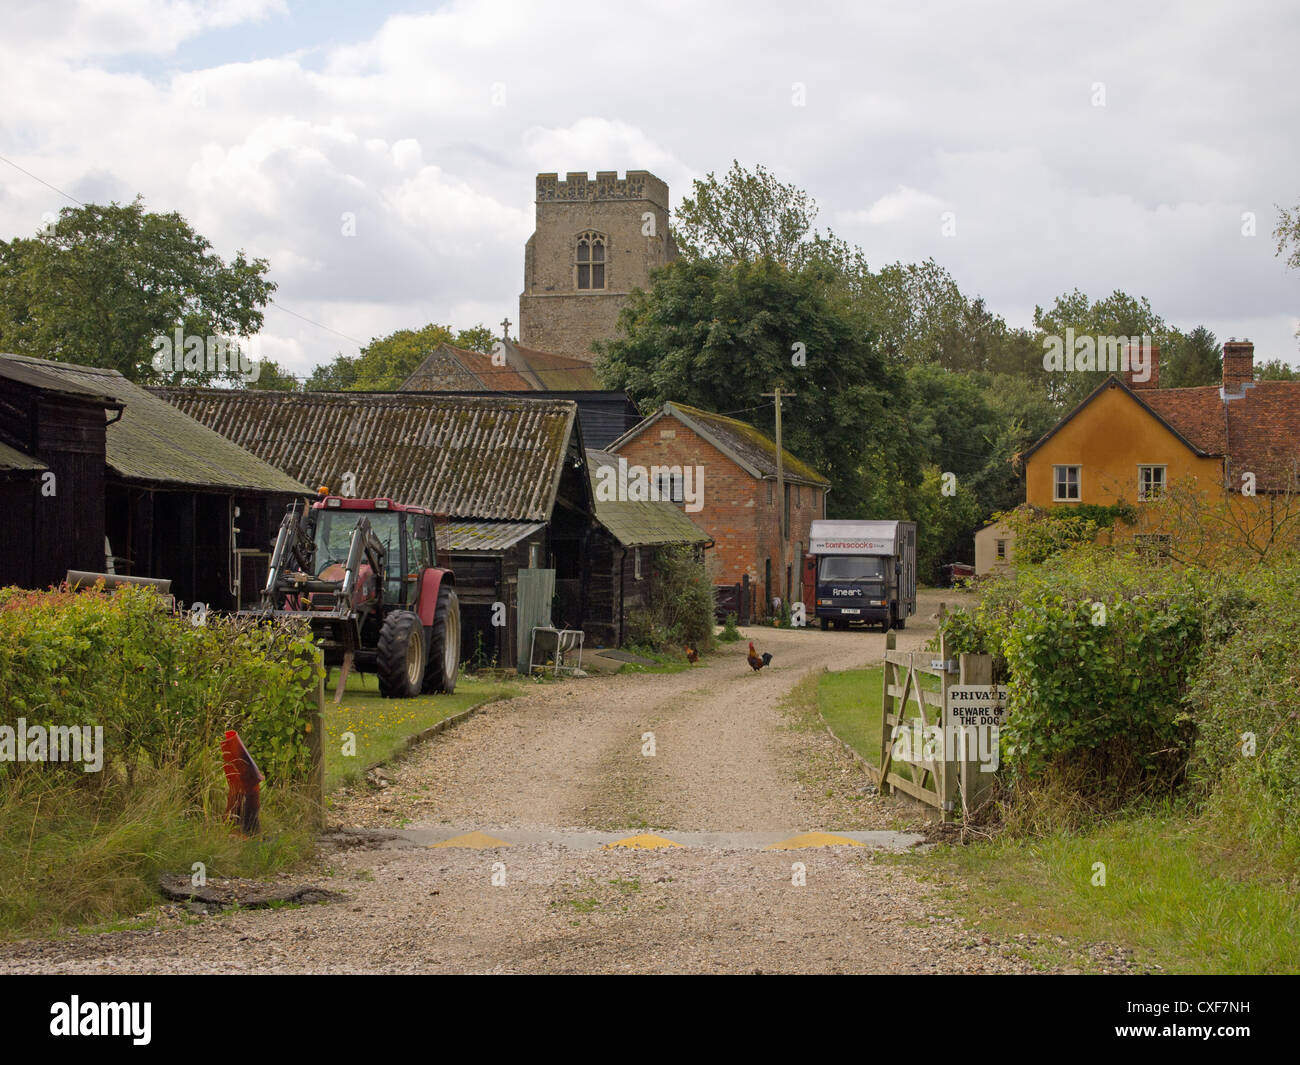 Eine Szene von einem englischen Landhaus Hof, mit Nebengebäuden, Traktor, Legehennen/Hühner und einen Kirchturm. Stockfoto